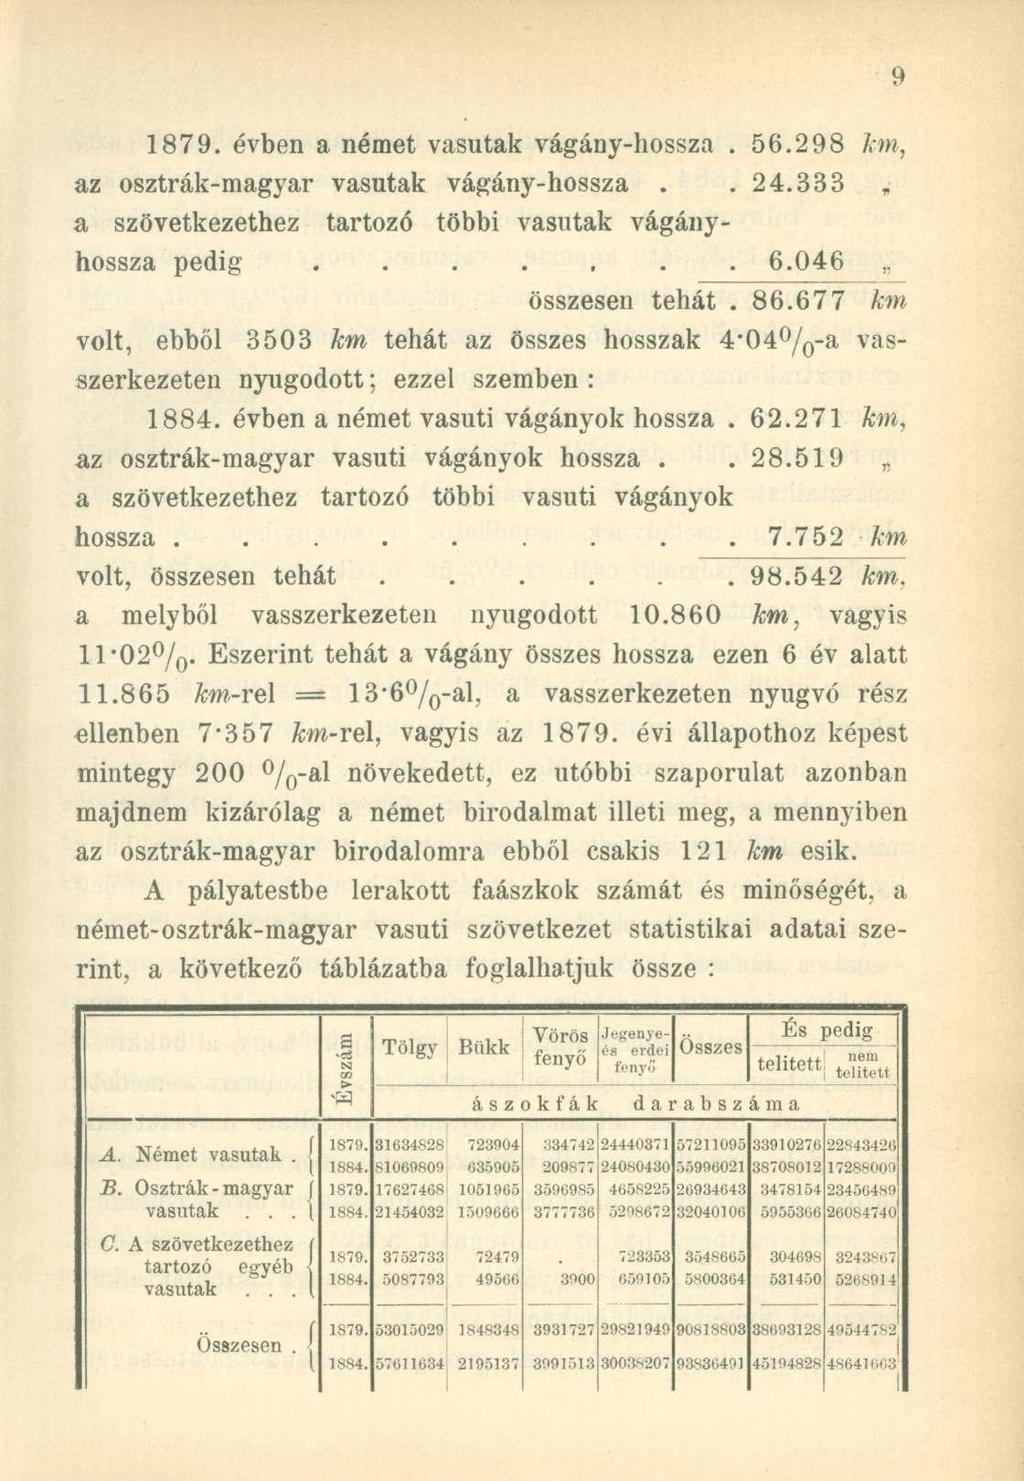 1879. évben a német vasutak vágány-hossza. 56.298 km, az osztrák-magyar vasutak vágány-hossza..24.333 a szövetkezethez tartozó többi vasutak vágányhossza pedig....... 6.046,. összesen tehát.86.